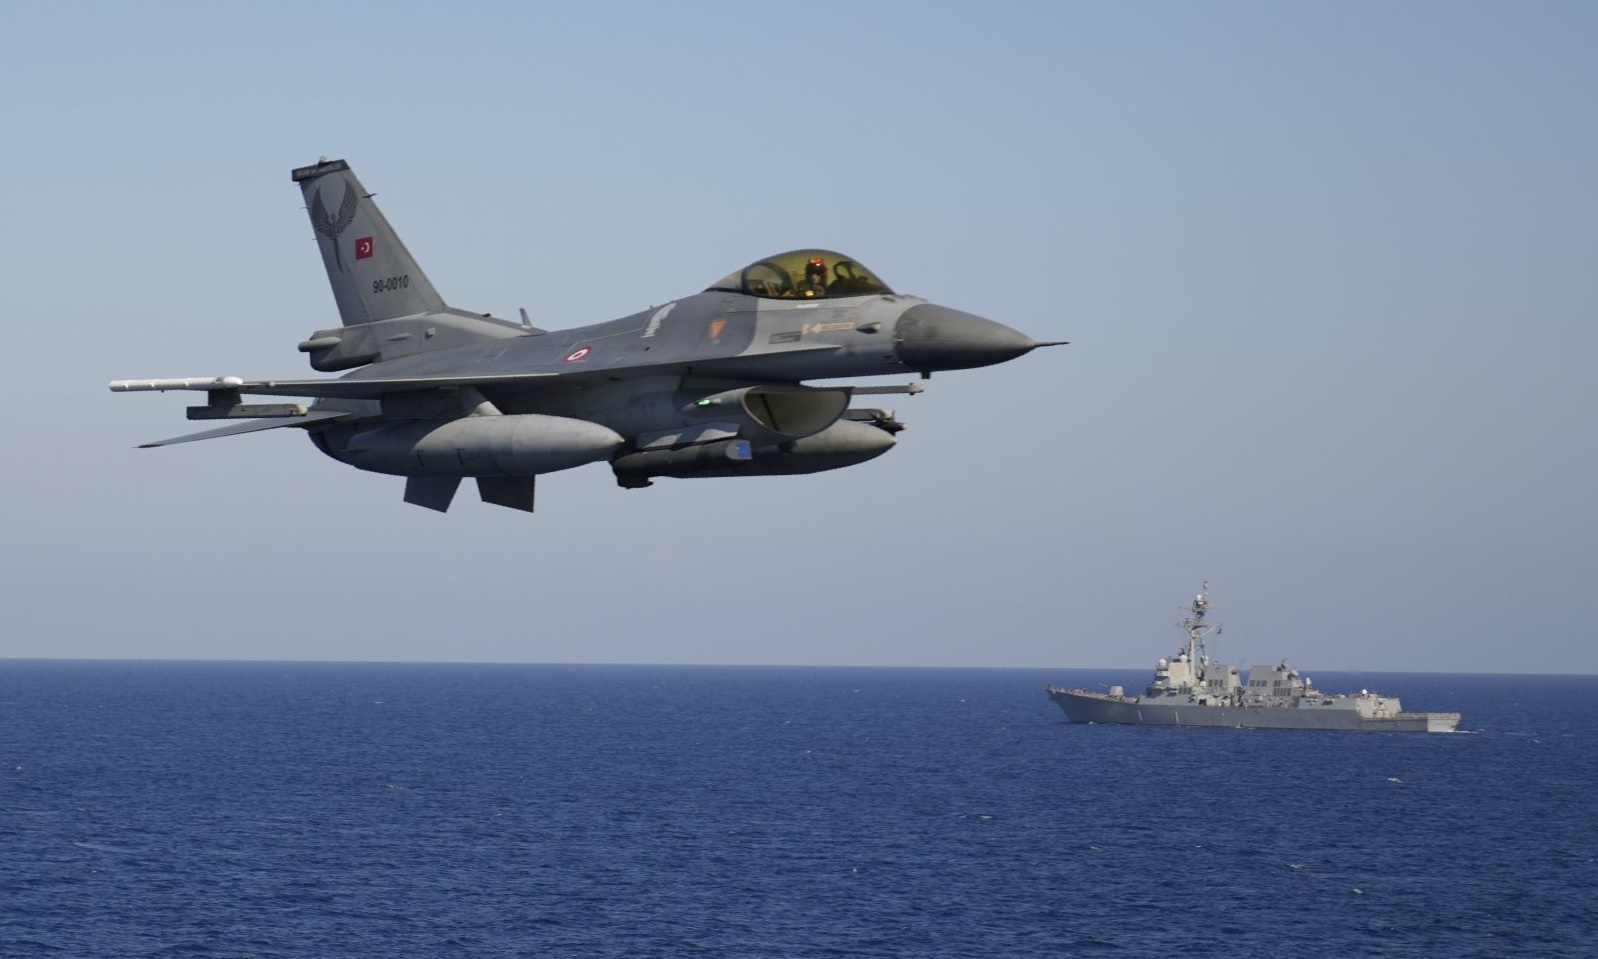 Một tiêm kích F-16 của Thổ Nhĩ Kỳ tham gia cuộc tập trận hải quân thường niên của NATO trên Địa Trung Hải hồi tháng 9 năm ngoái. Ảnh: AP